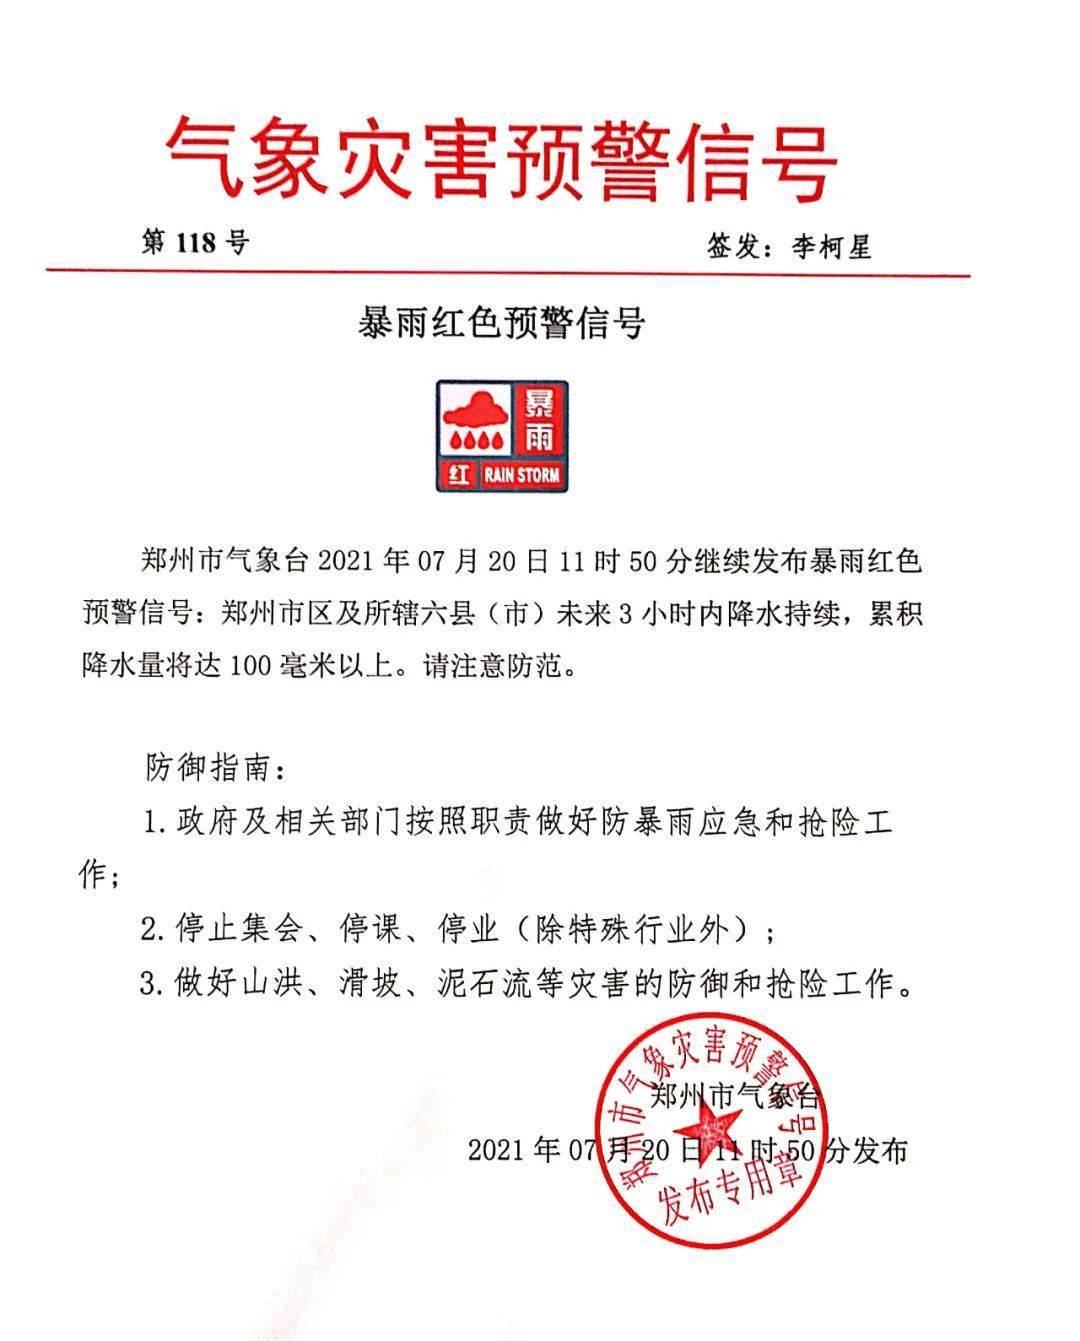 郑州市防汛抗旱指挥部关于提升防汛应急响应至Ⅱ级的紧急通知各区县